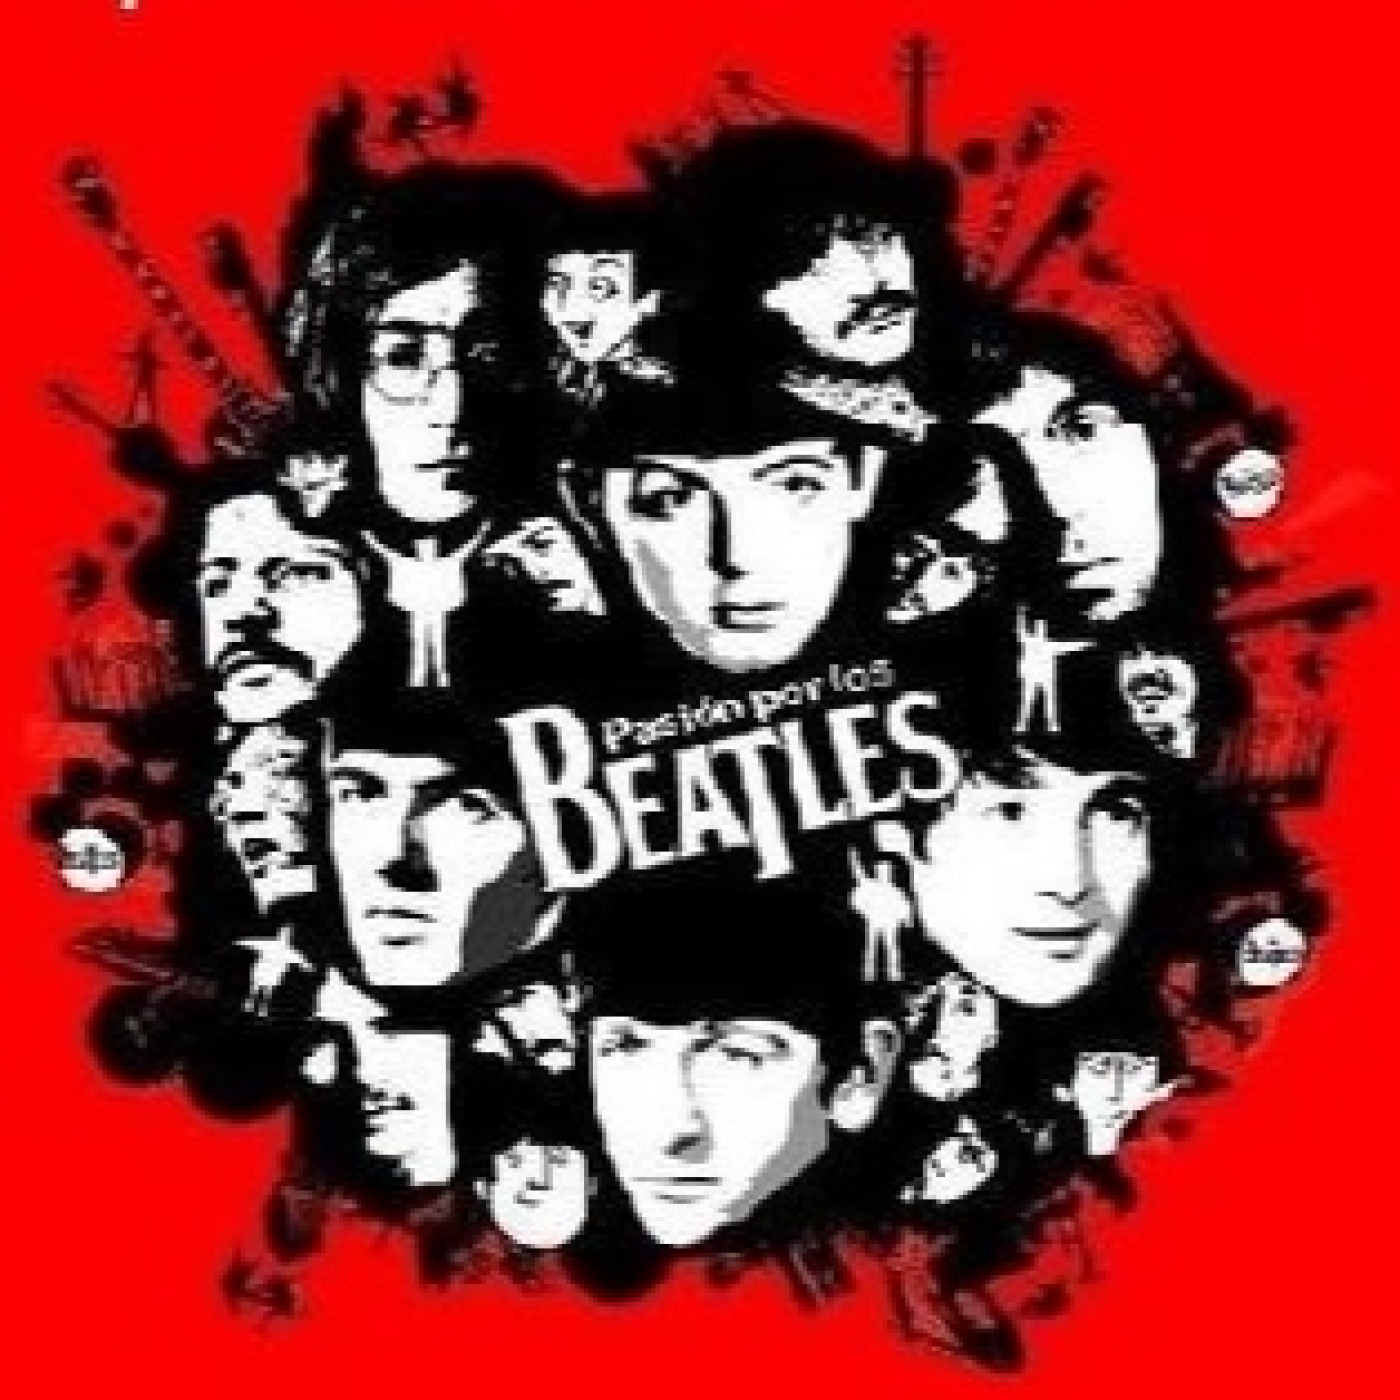 Pasión por los Beatles 127 - Canciones encadenadas Beatles I